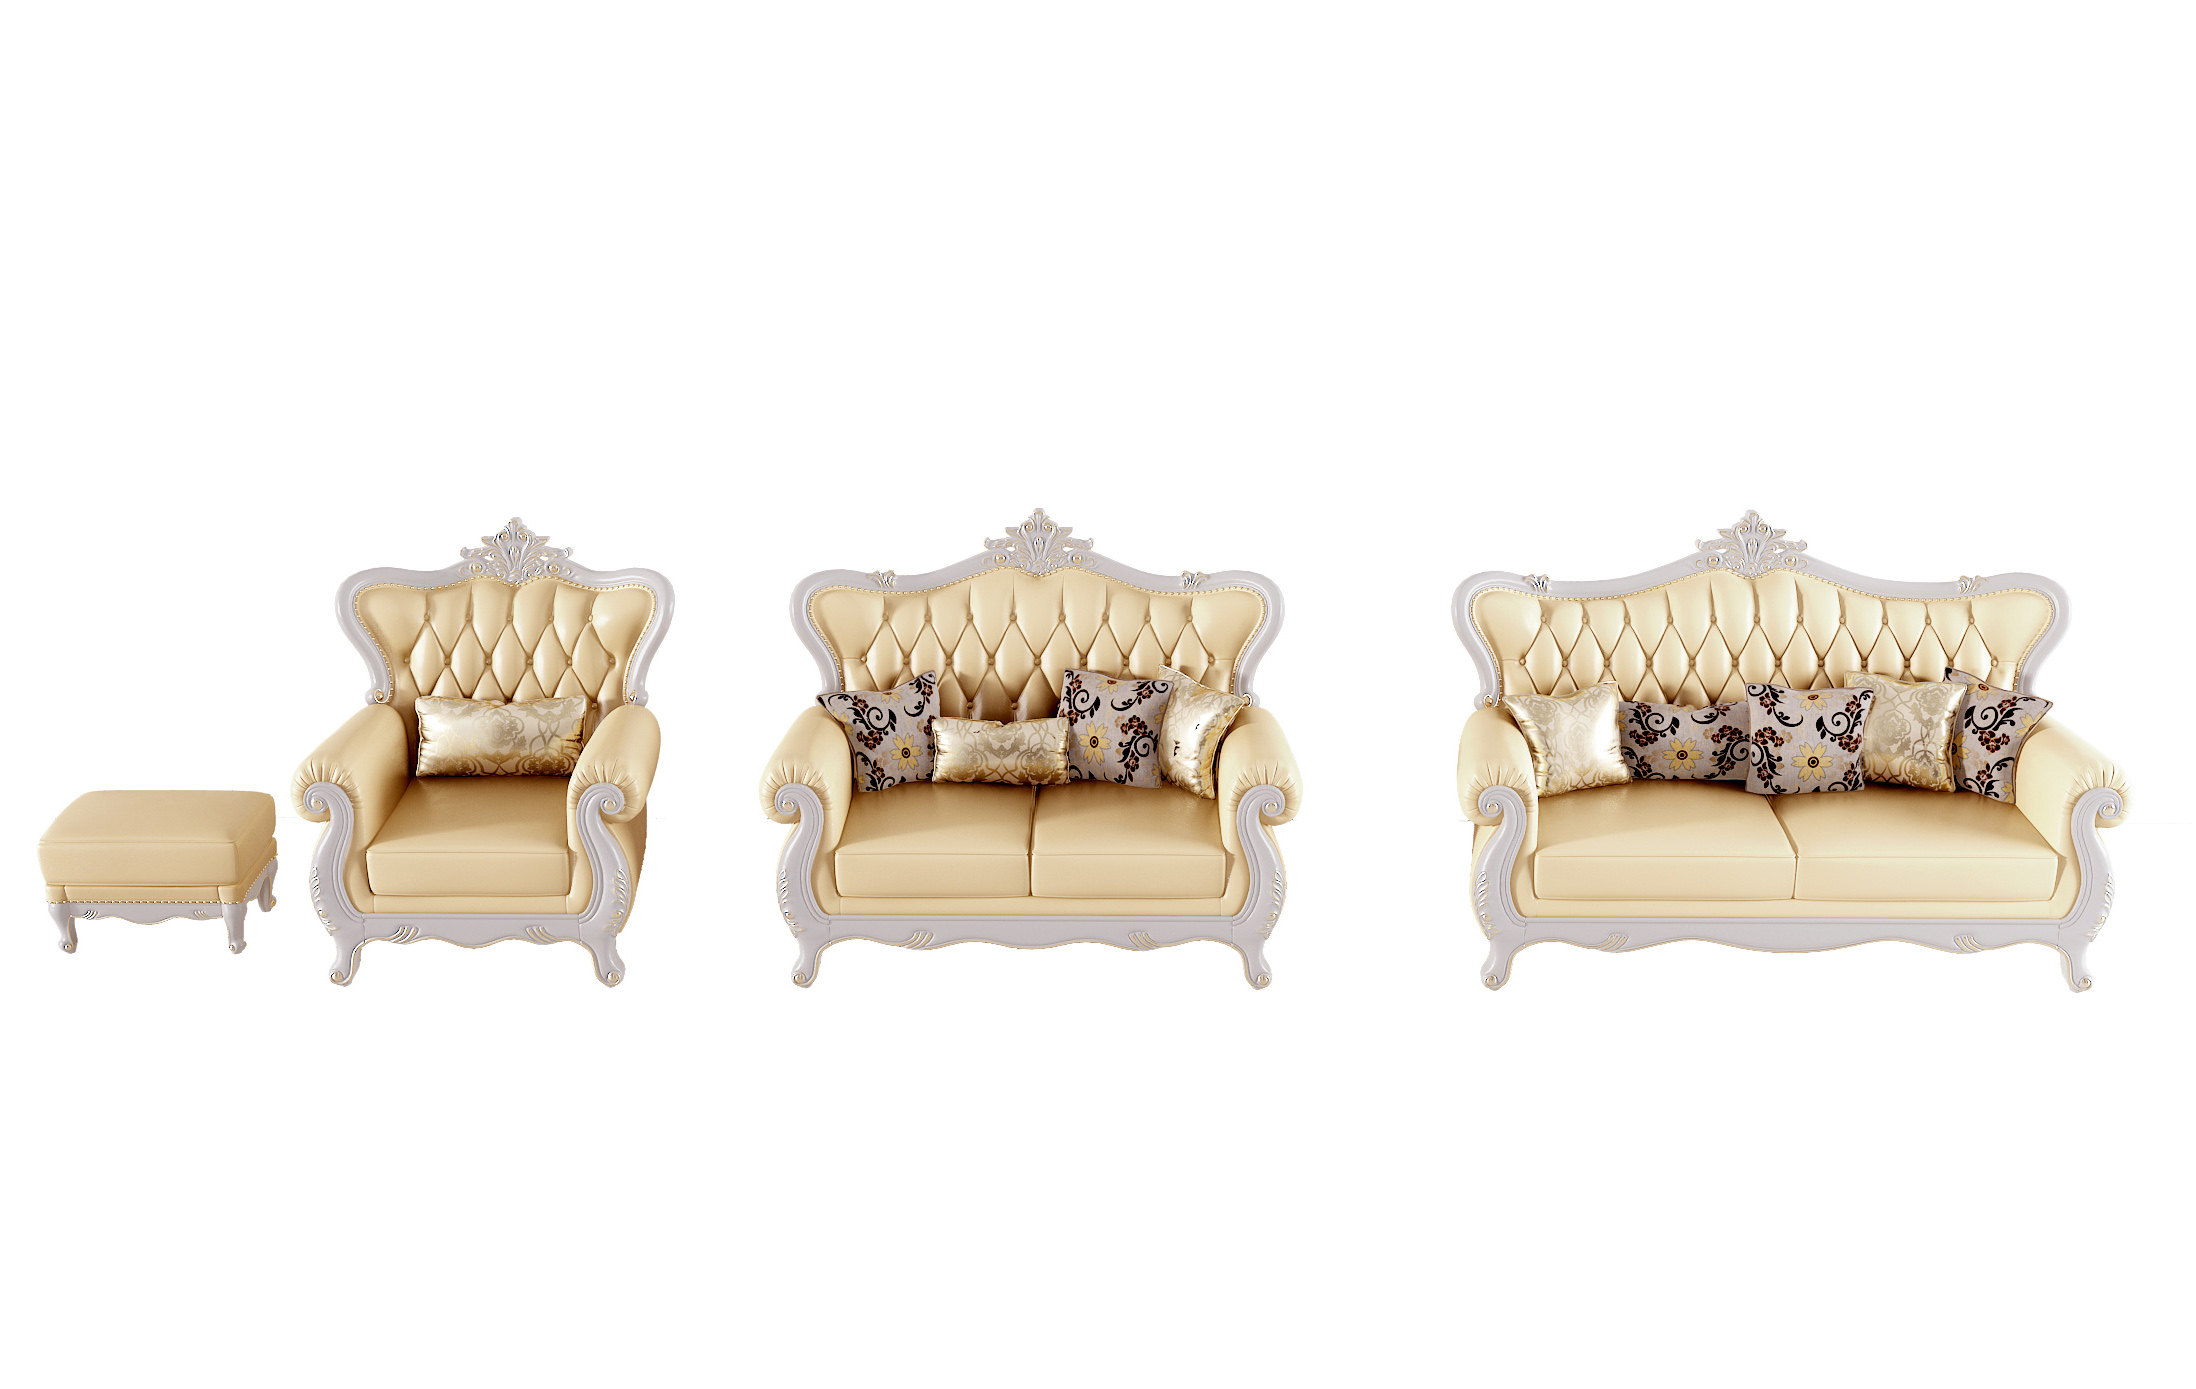 欧式古典雕花沙发组合,单人双人沙发 (2)3d模型下载